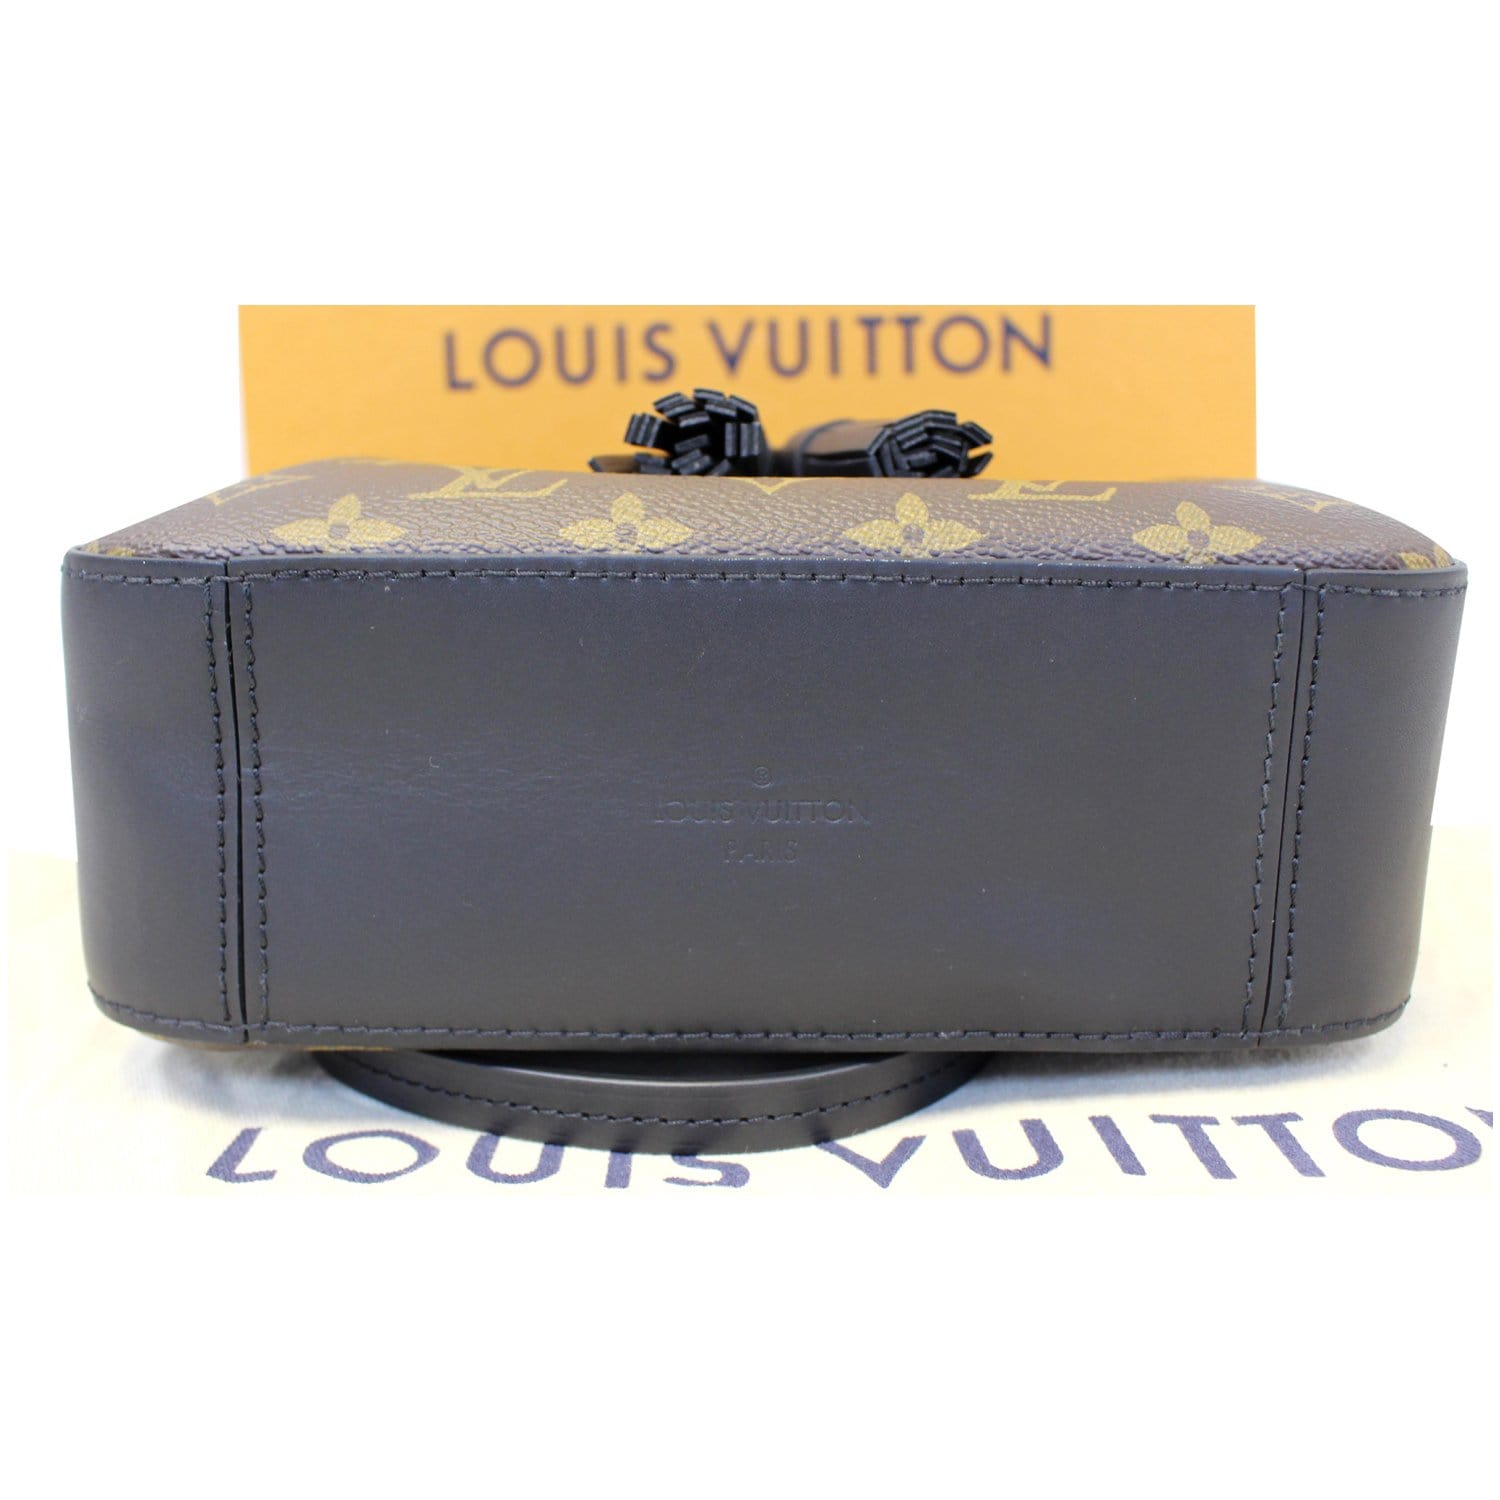 LOUIS VUITTON LOUIS VUITTON Saintonge Shoulder Bag M44593 Monogram